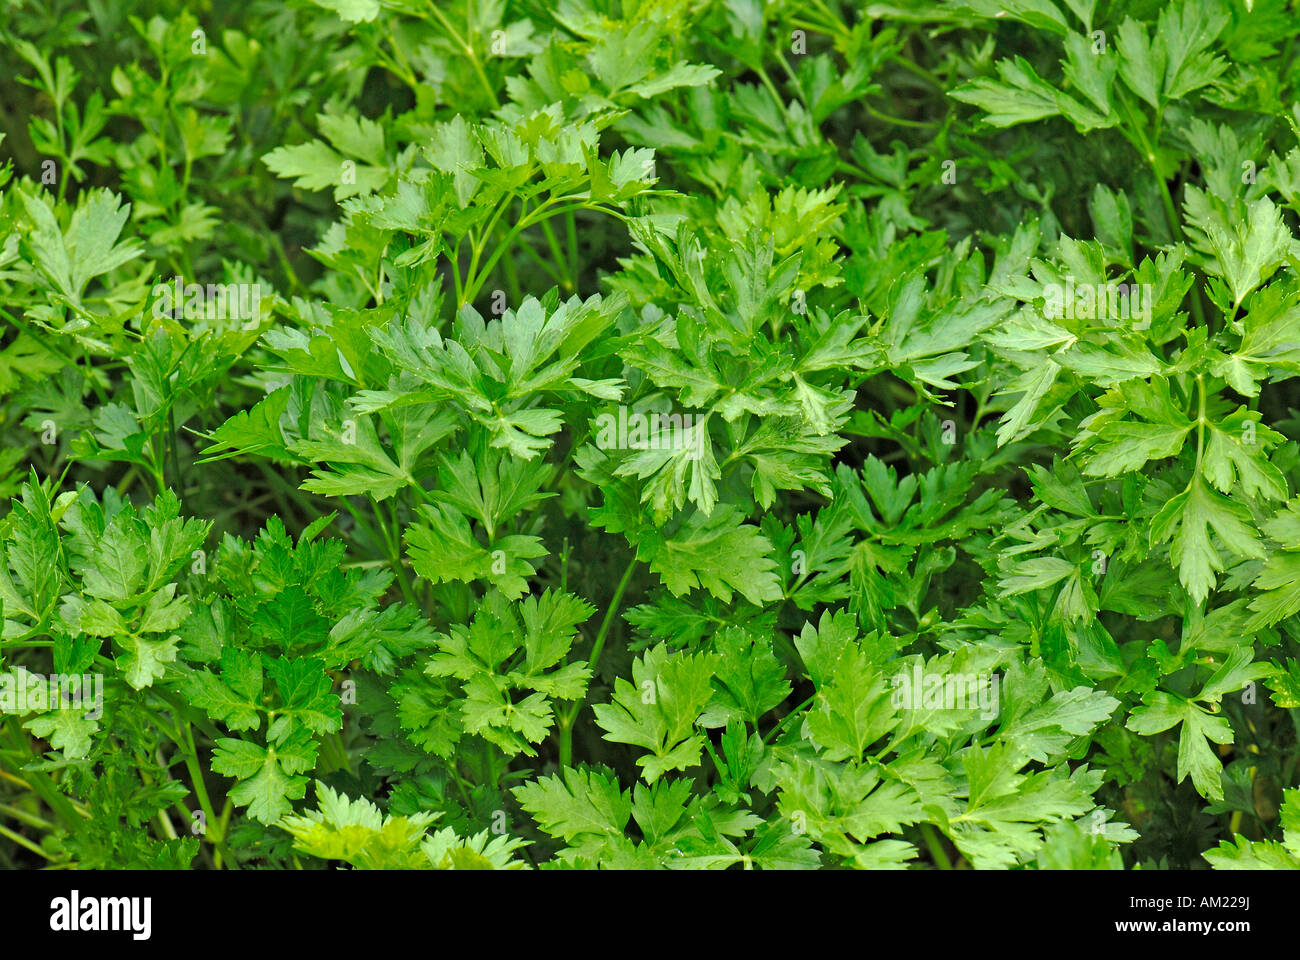 Italian Parsley, Flat leaf Parsley (Petroselinum crispum), variety: Gigante d Italia Stock Photo